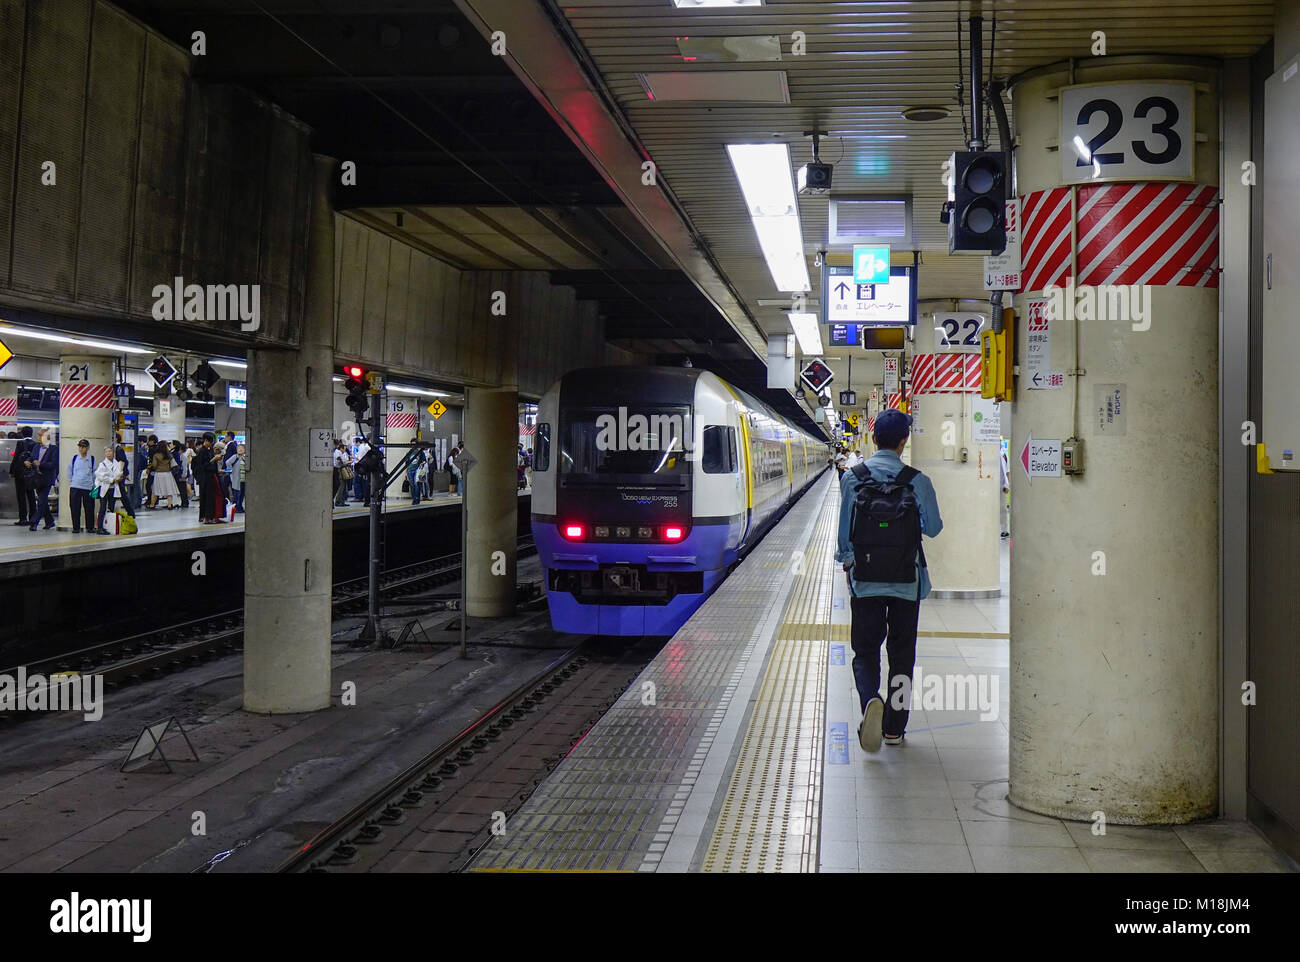 Tokyo, Giappone - 29 set 2017. Un treno in arrivo alla stazione della metropolitana di Tokyo, Giappone. Il trasporto ferroviario in Giappone è uno dei principali mezzi di trasporto di passeggeri. Foto Stock